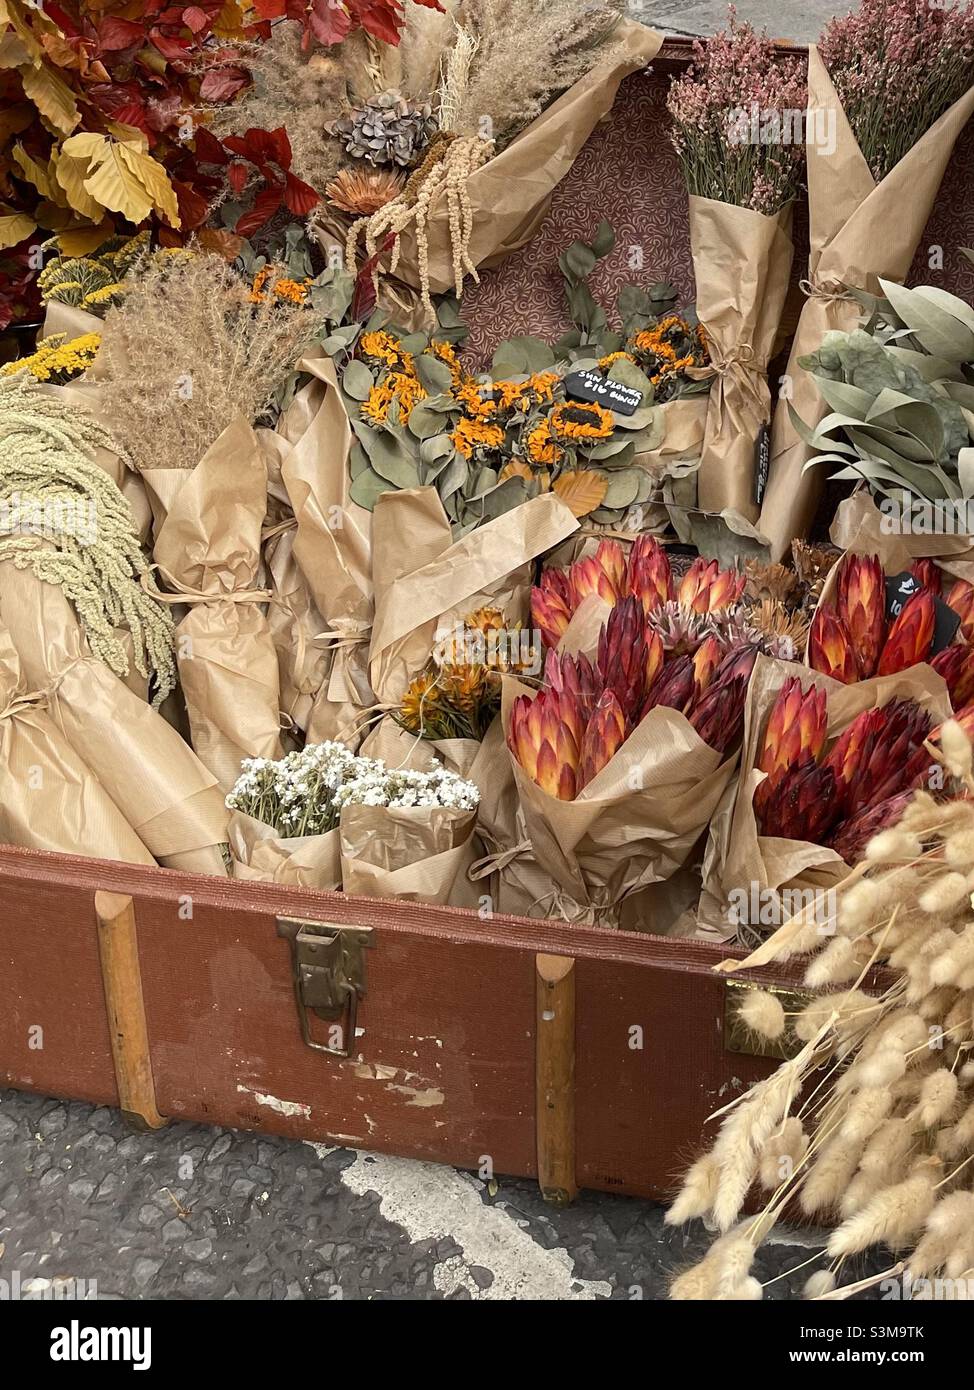 Fiori secchi e piante si siedono avvolti in carta marrone in una valigia d'epoca. Foto Stock